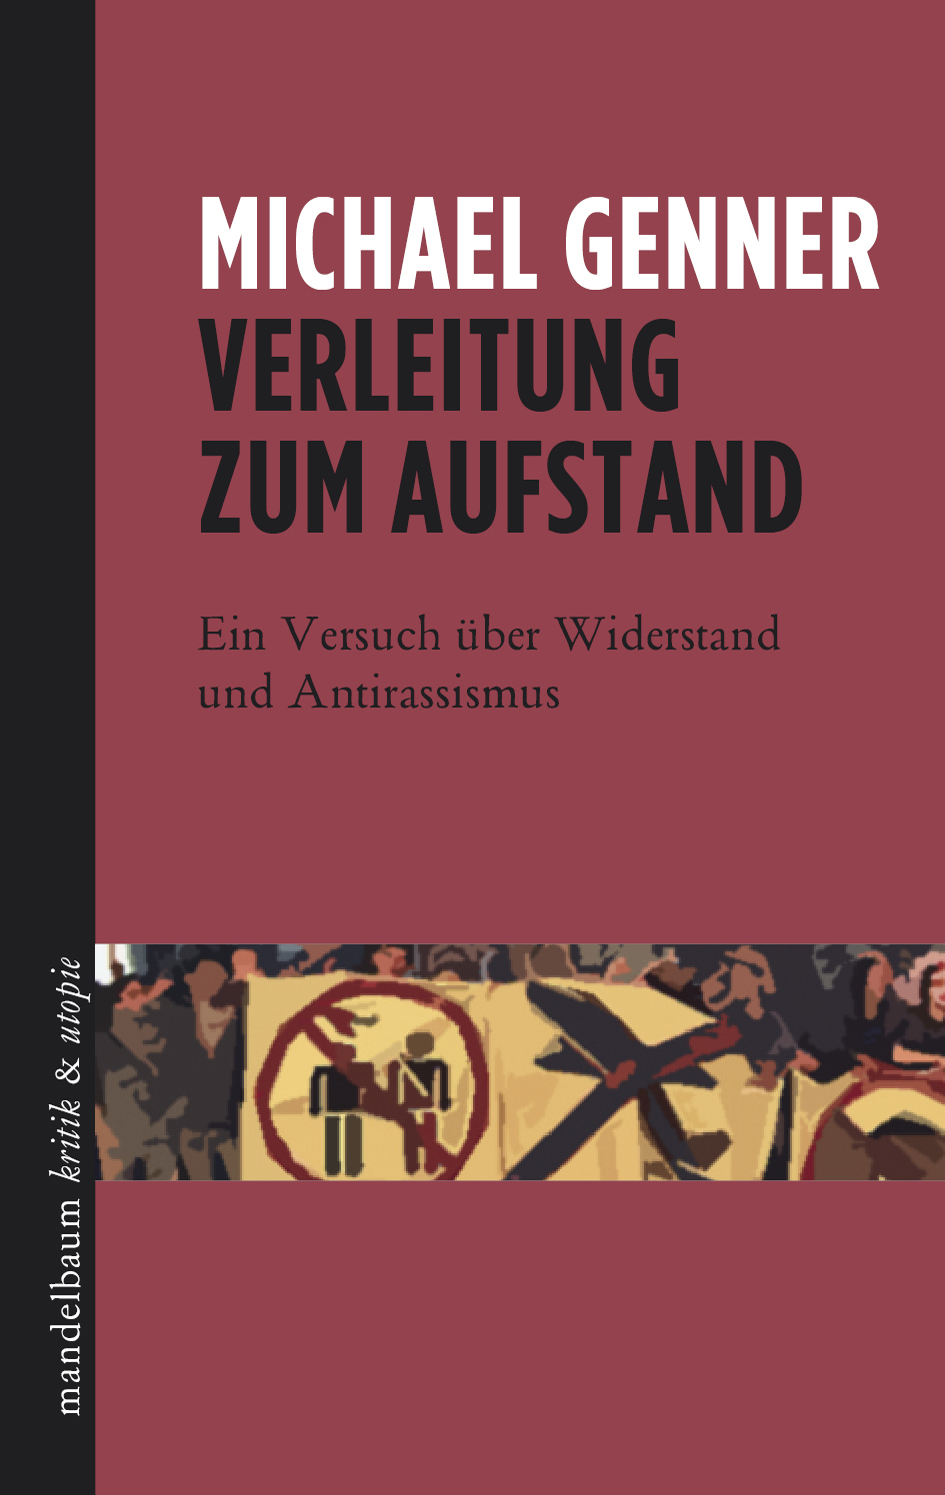 Verleitung zum Aufstand (German language, mandelbaum verlag)